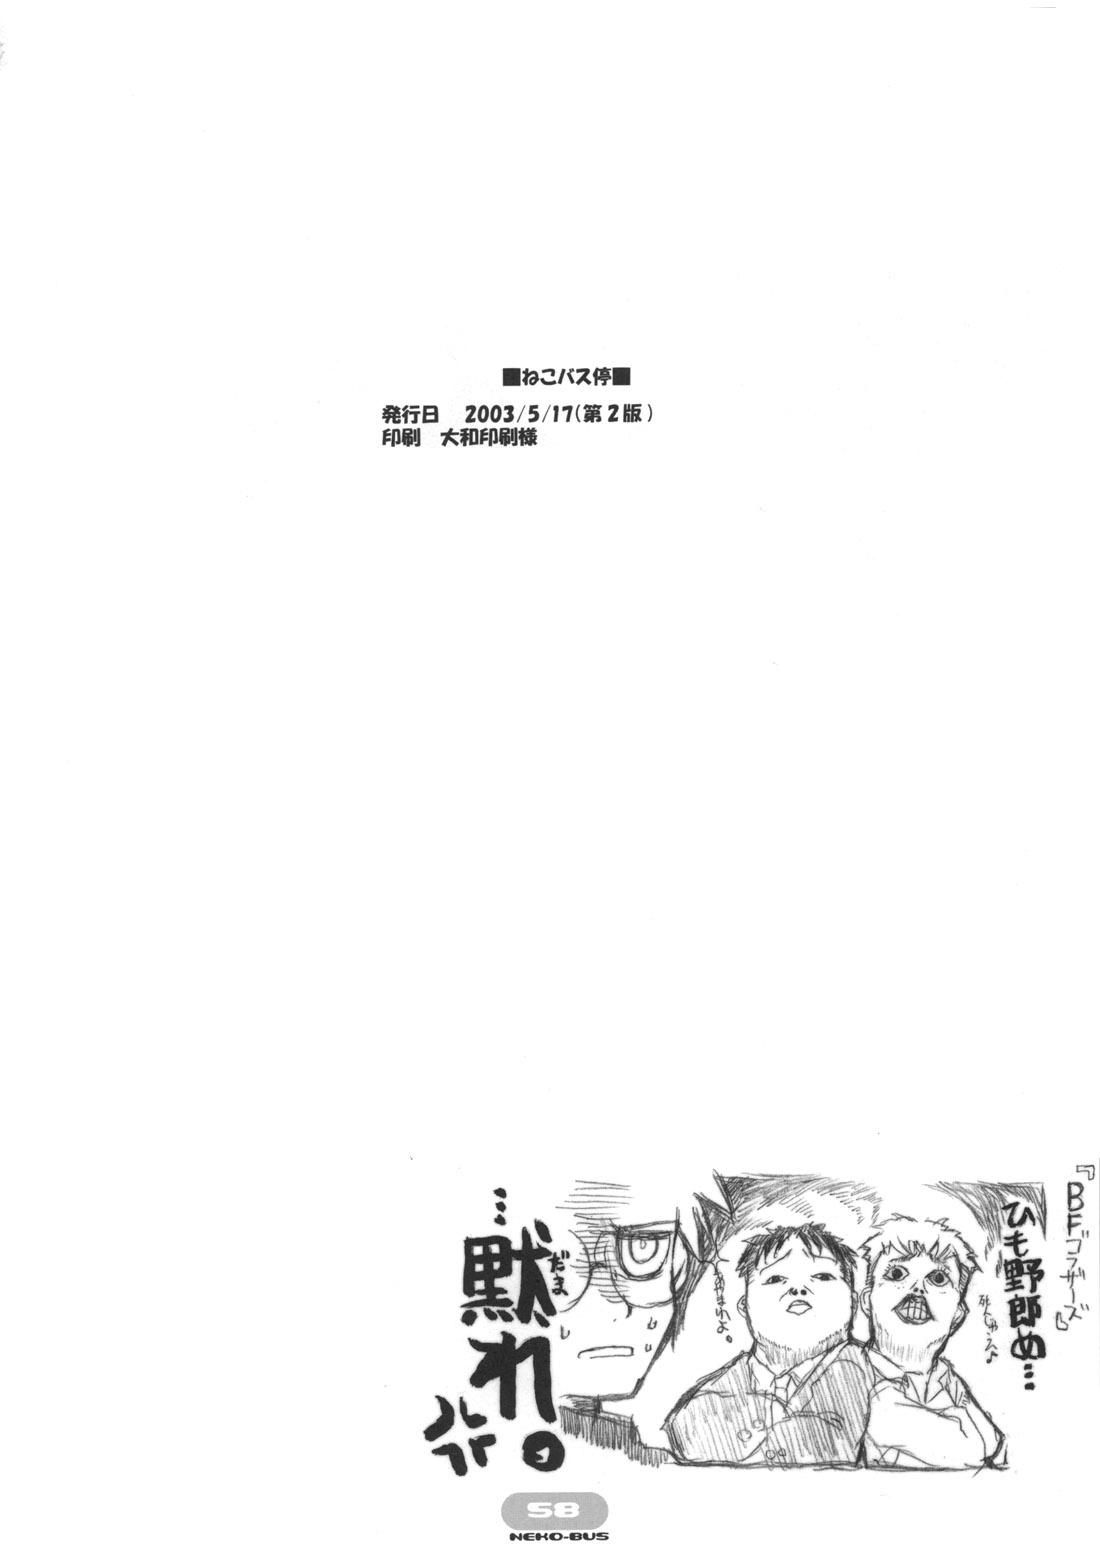 Bitch Neko-bus Tei no Hon vol.5 - Tsukihime Gay Broken - Page 58